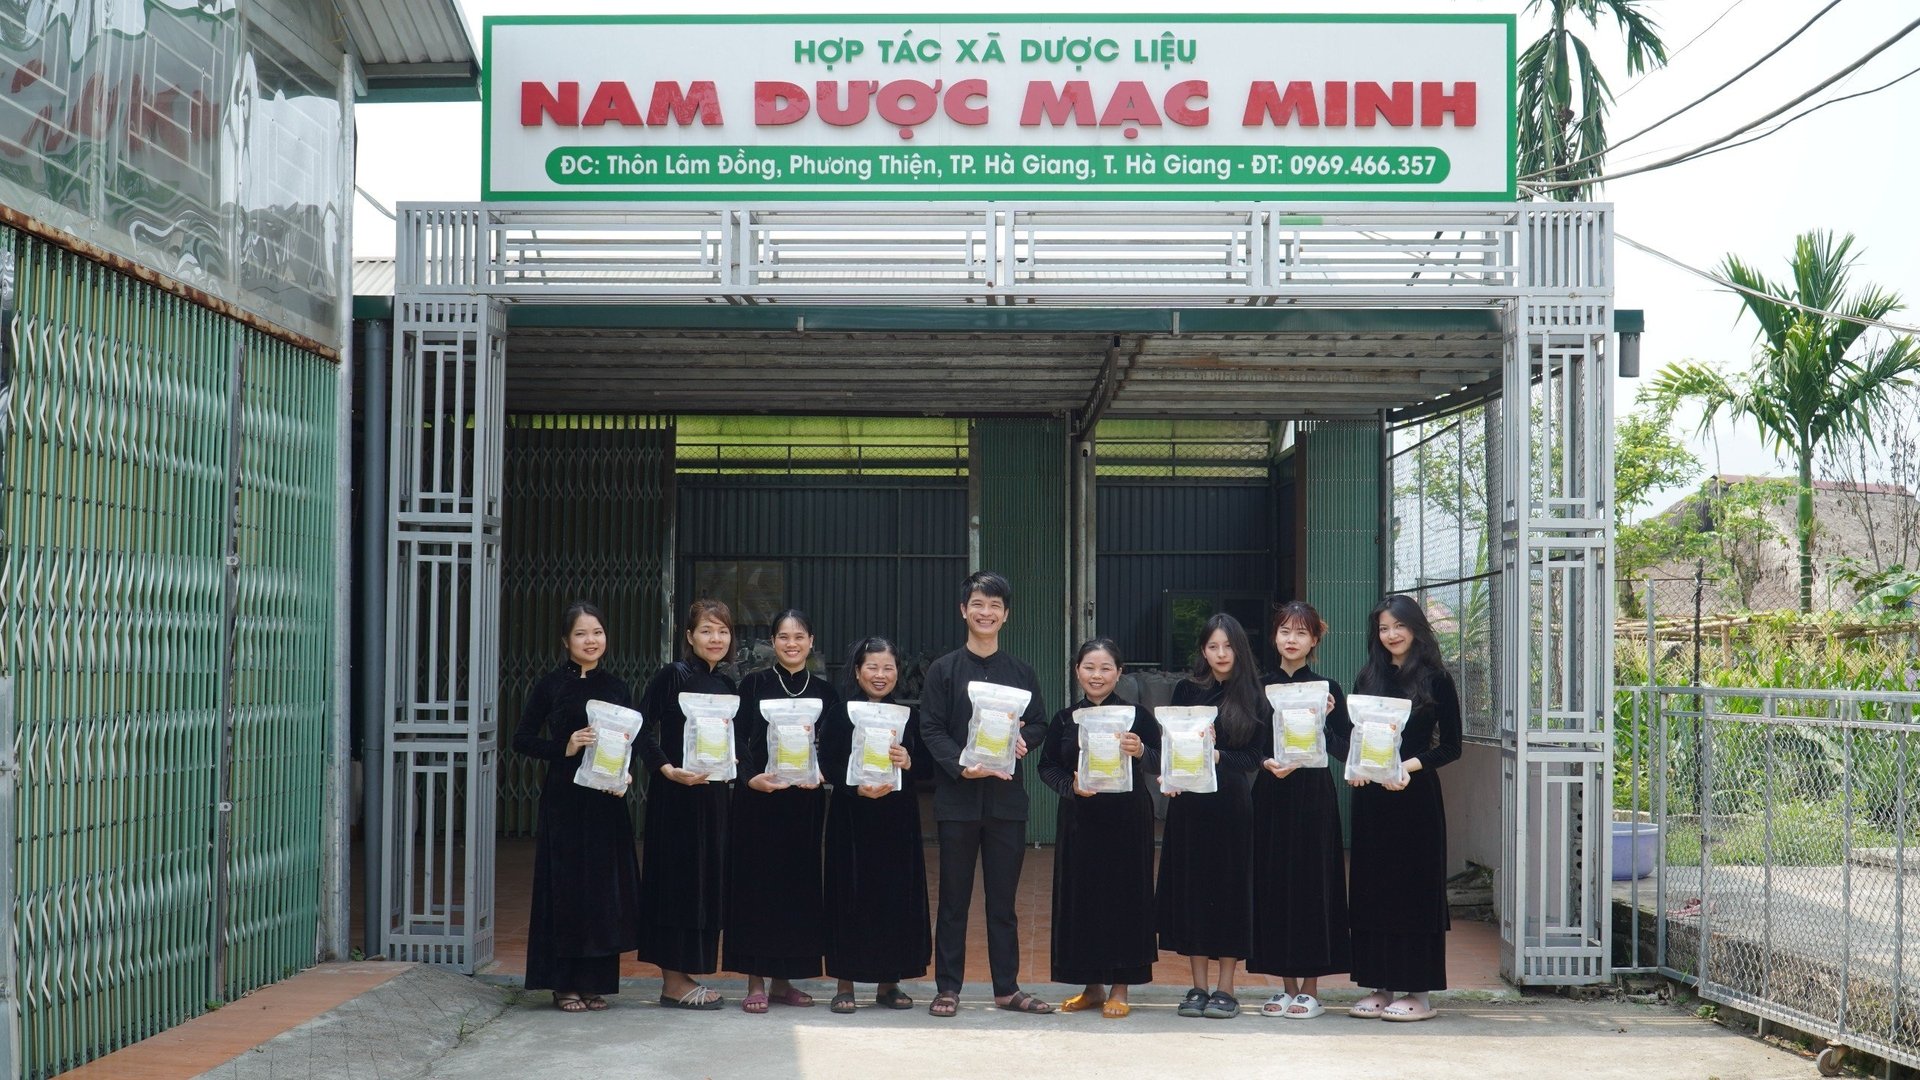 HTX Dược liệu Nam dược Mạc Minh hiện nay tạo ra nhiều cơ hội việc làm cho người dân địa phương tại Hà Giang.